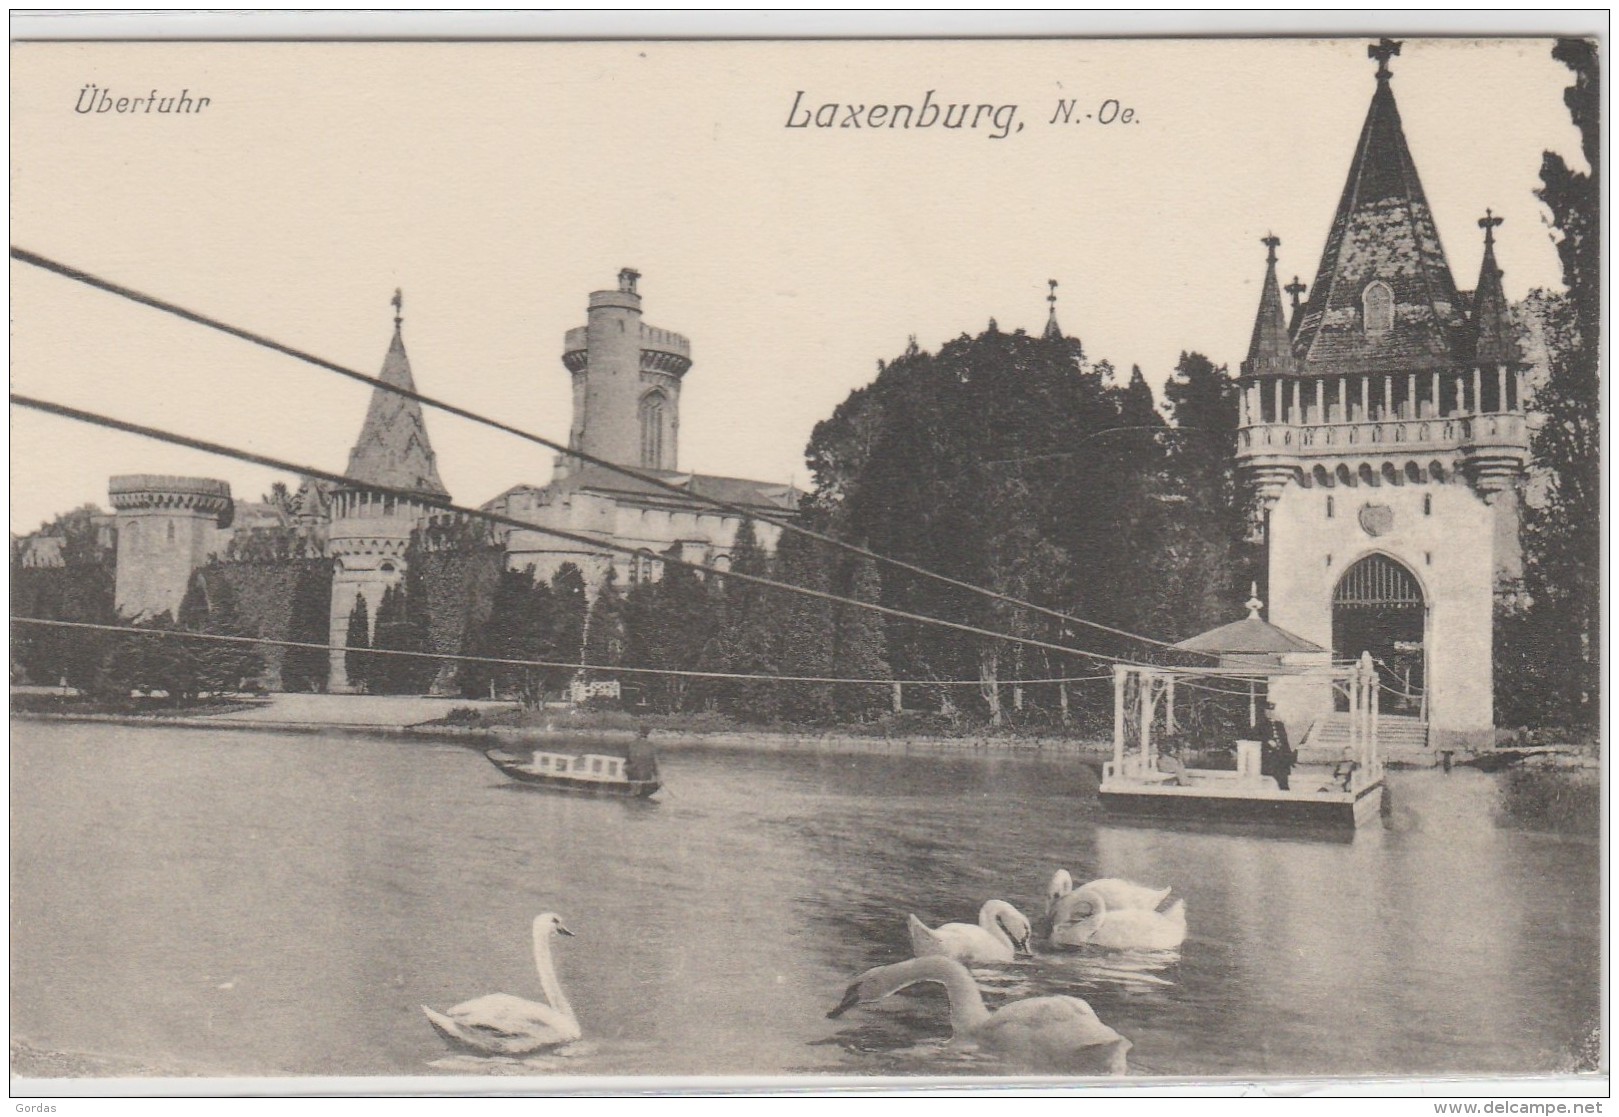 Austria - Laxenburg - Uberthur - Laxenburg